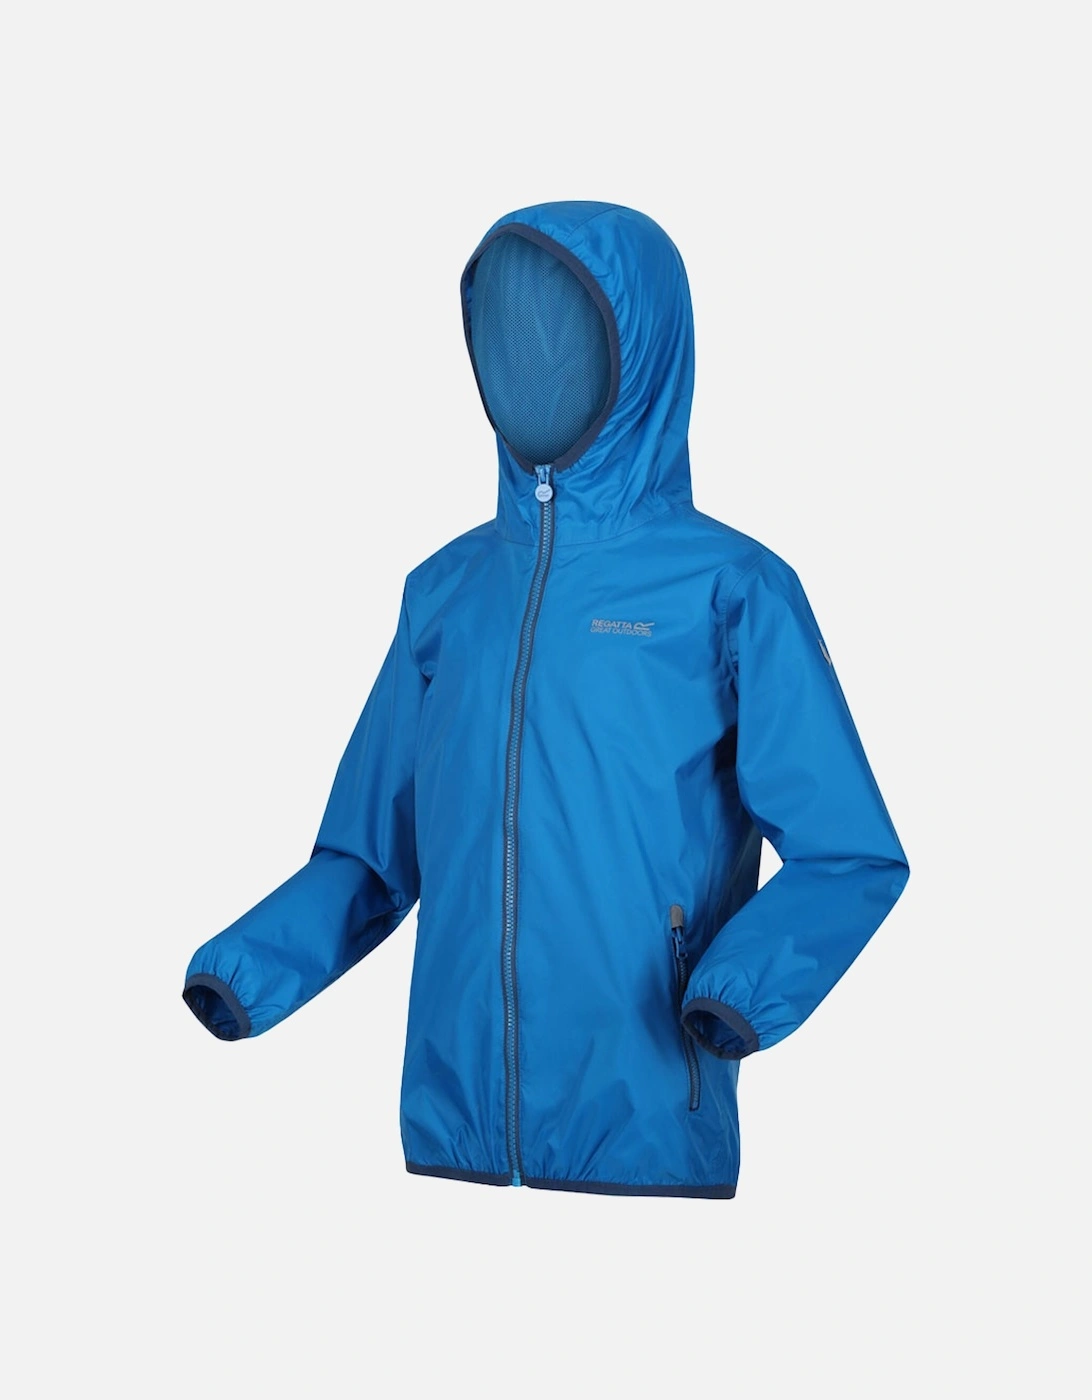 Boys & Girls Lever II Waterproof Technical Jacket, 3 of 2